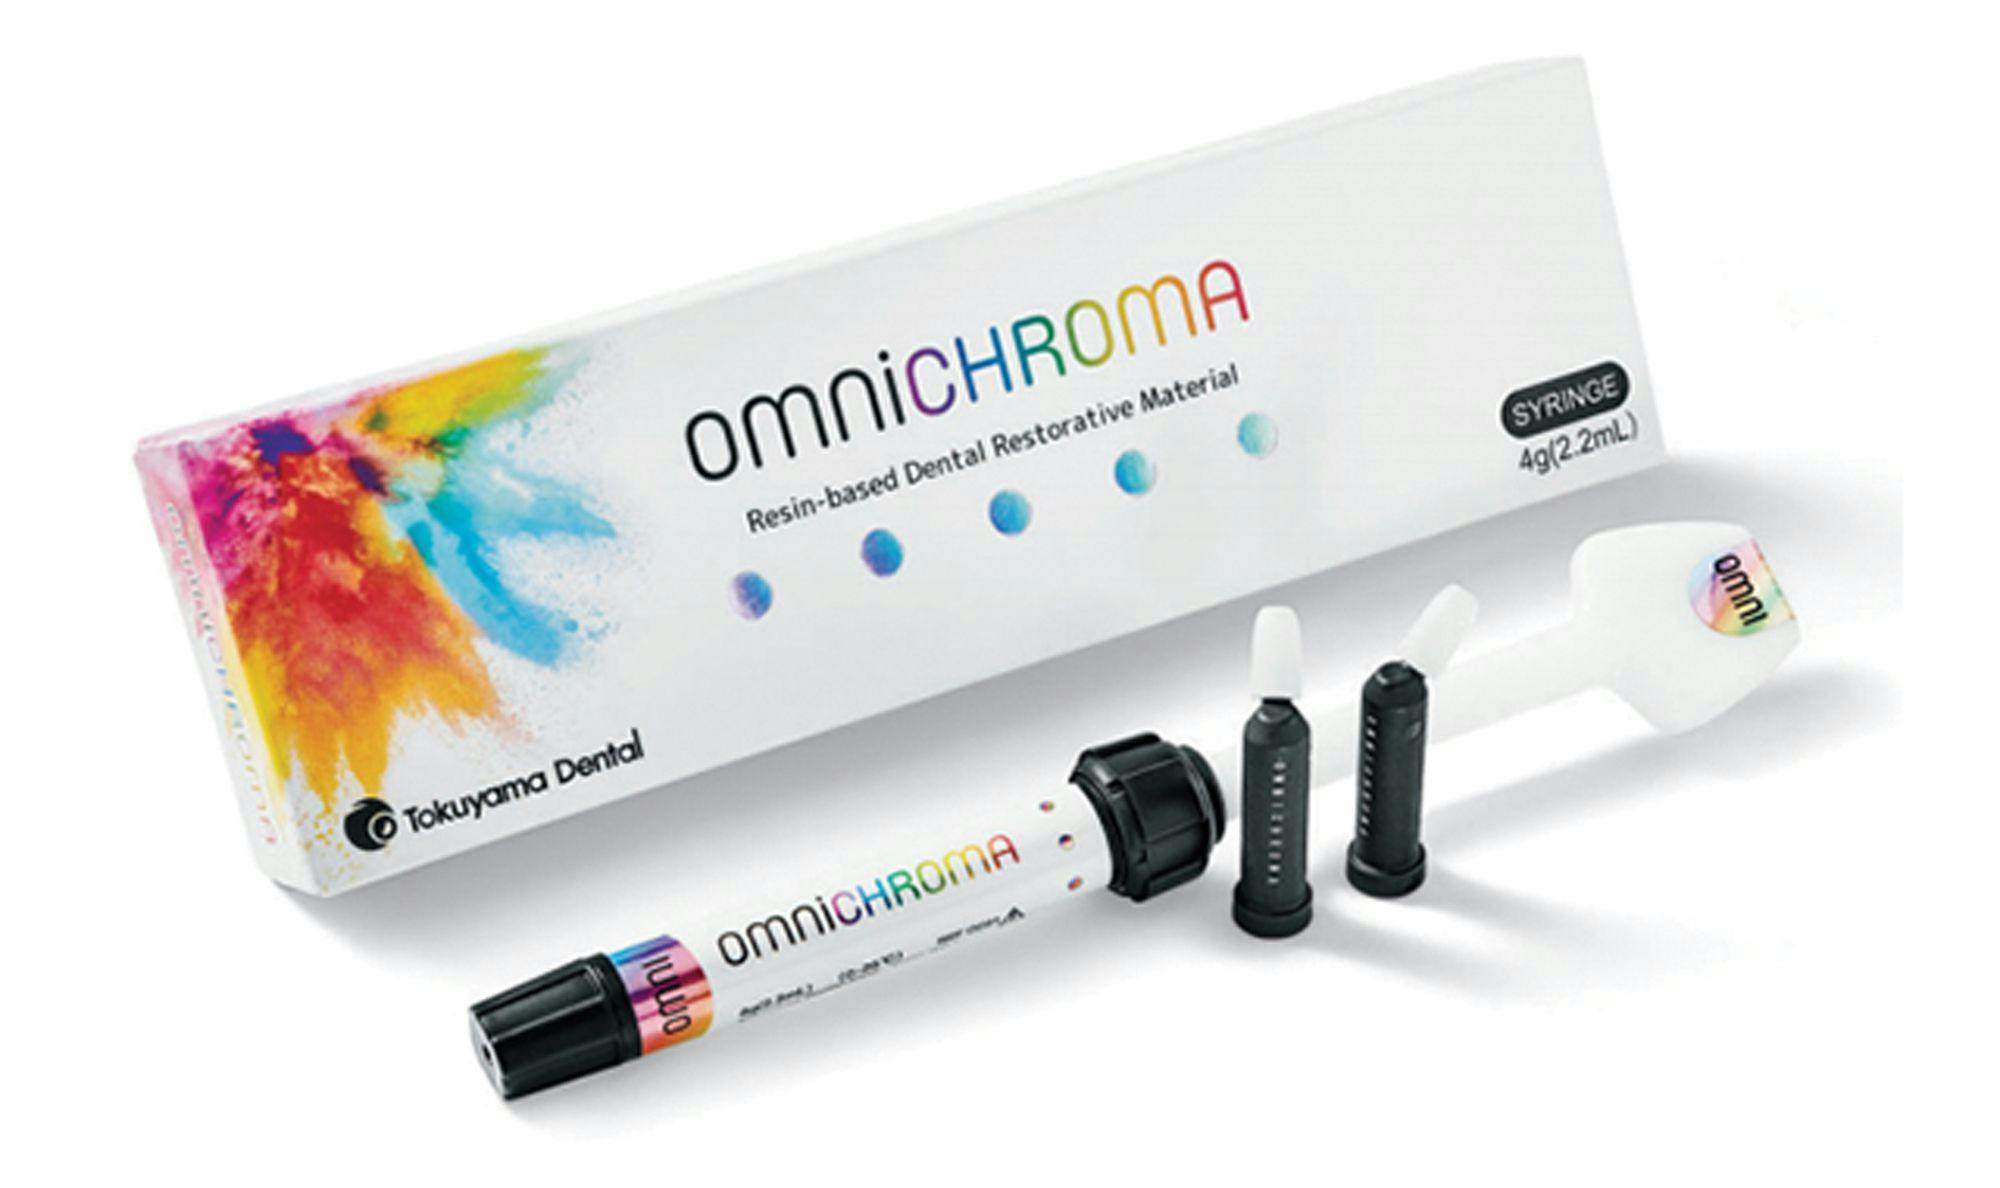 OMNICHROMA. Image credit: © Tokuyama Dental America